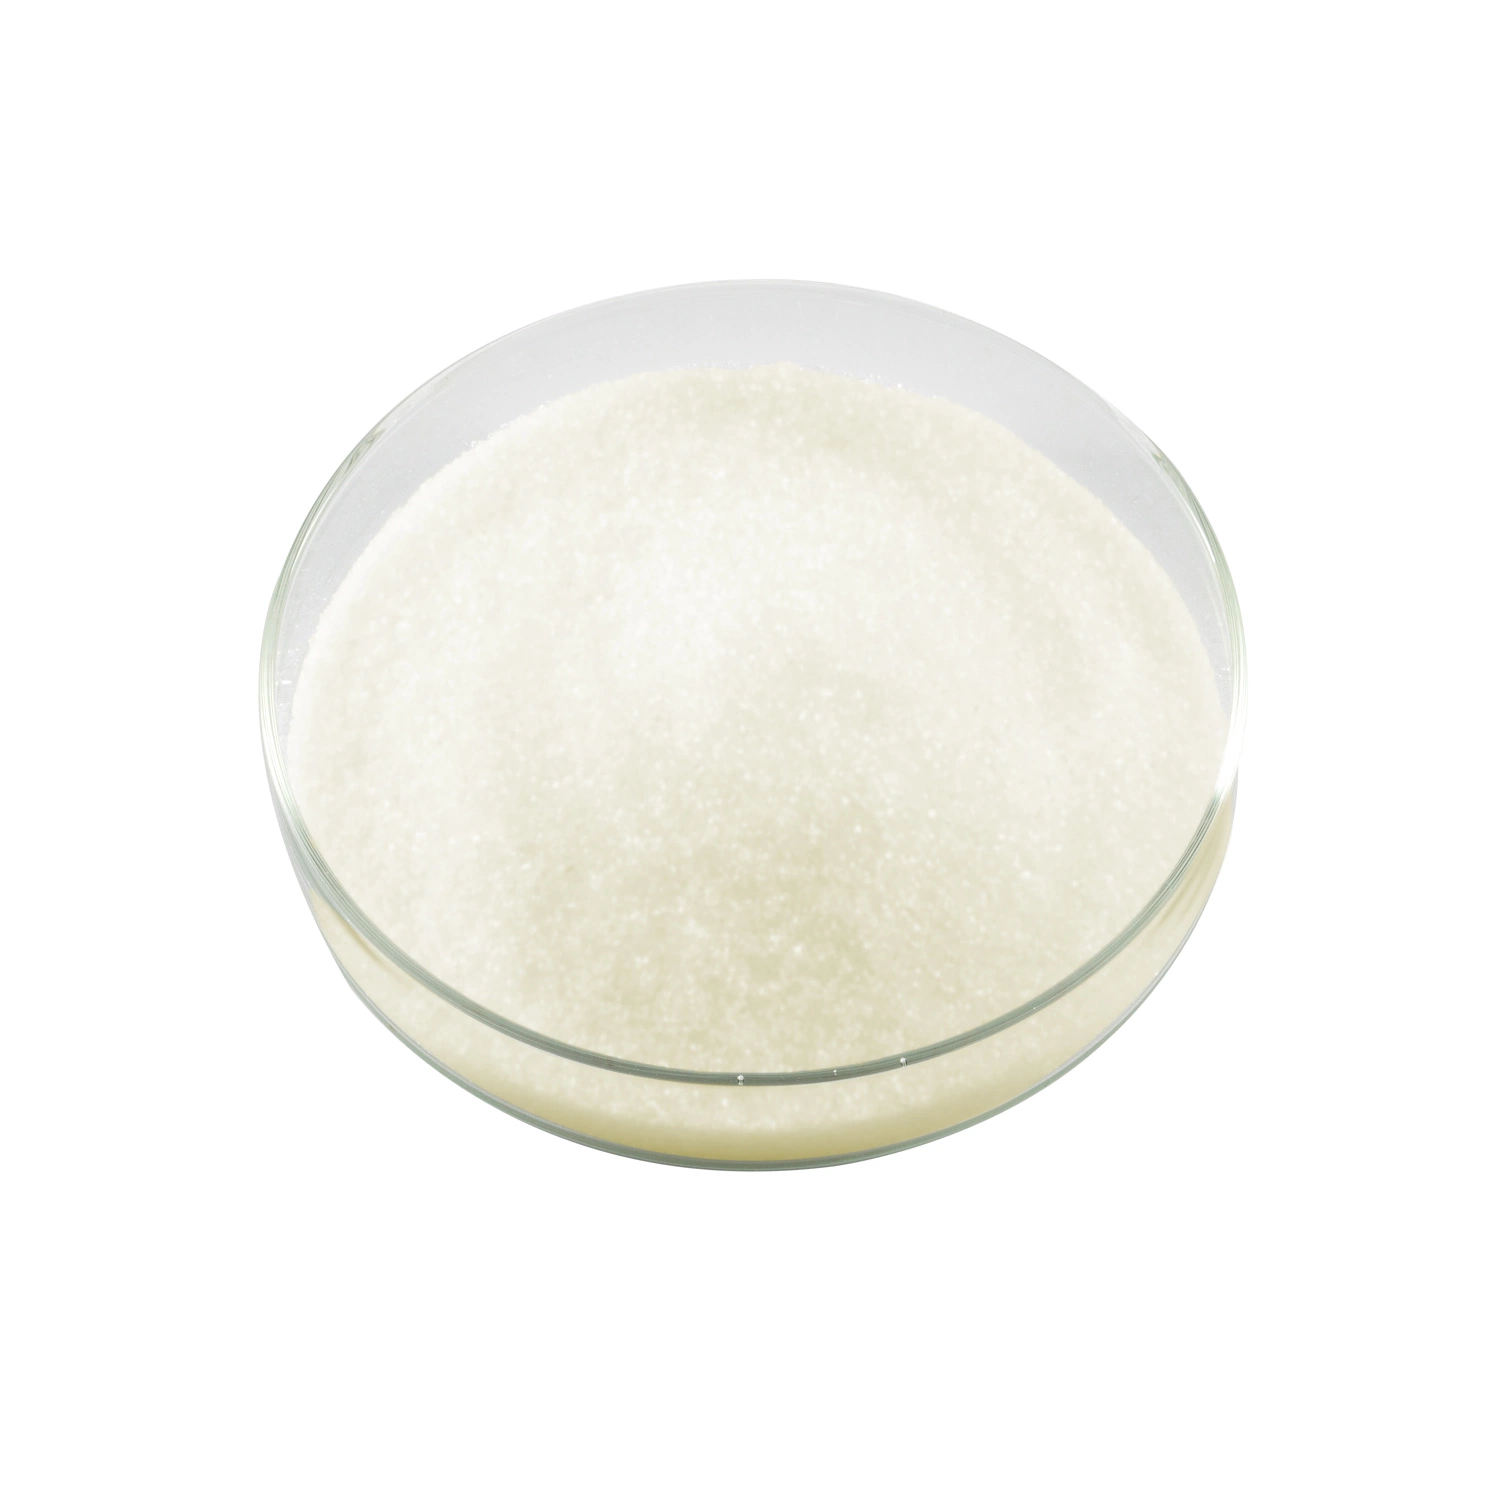 Vitamin K3 Menadione Powder Dietary Supplement in Powdered Form